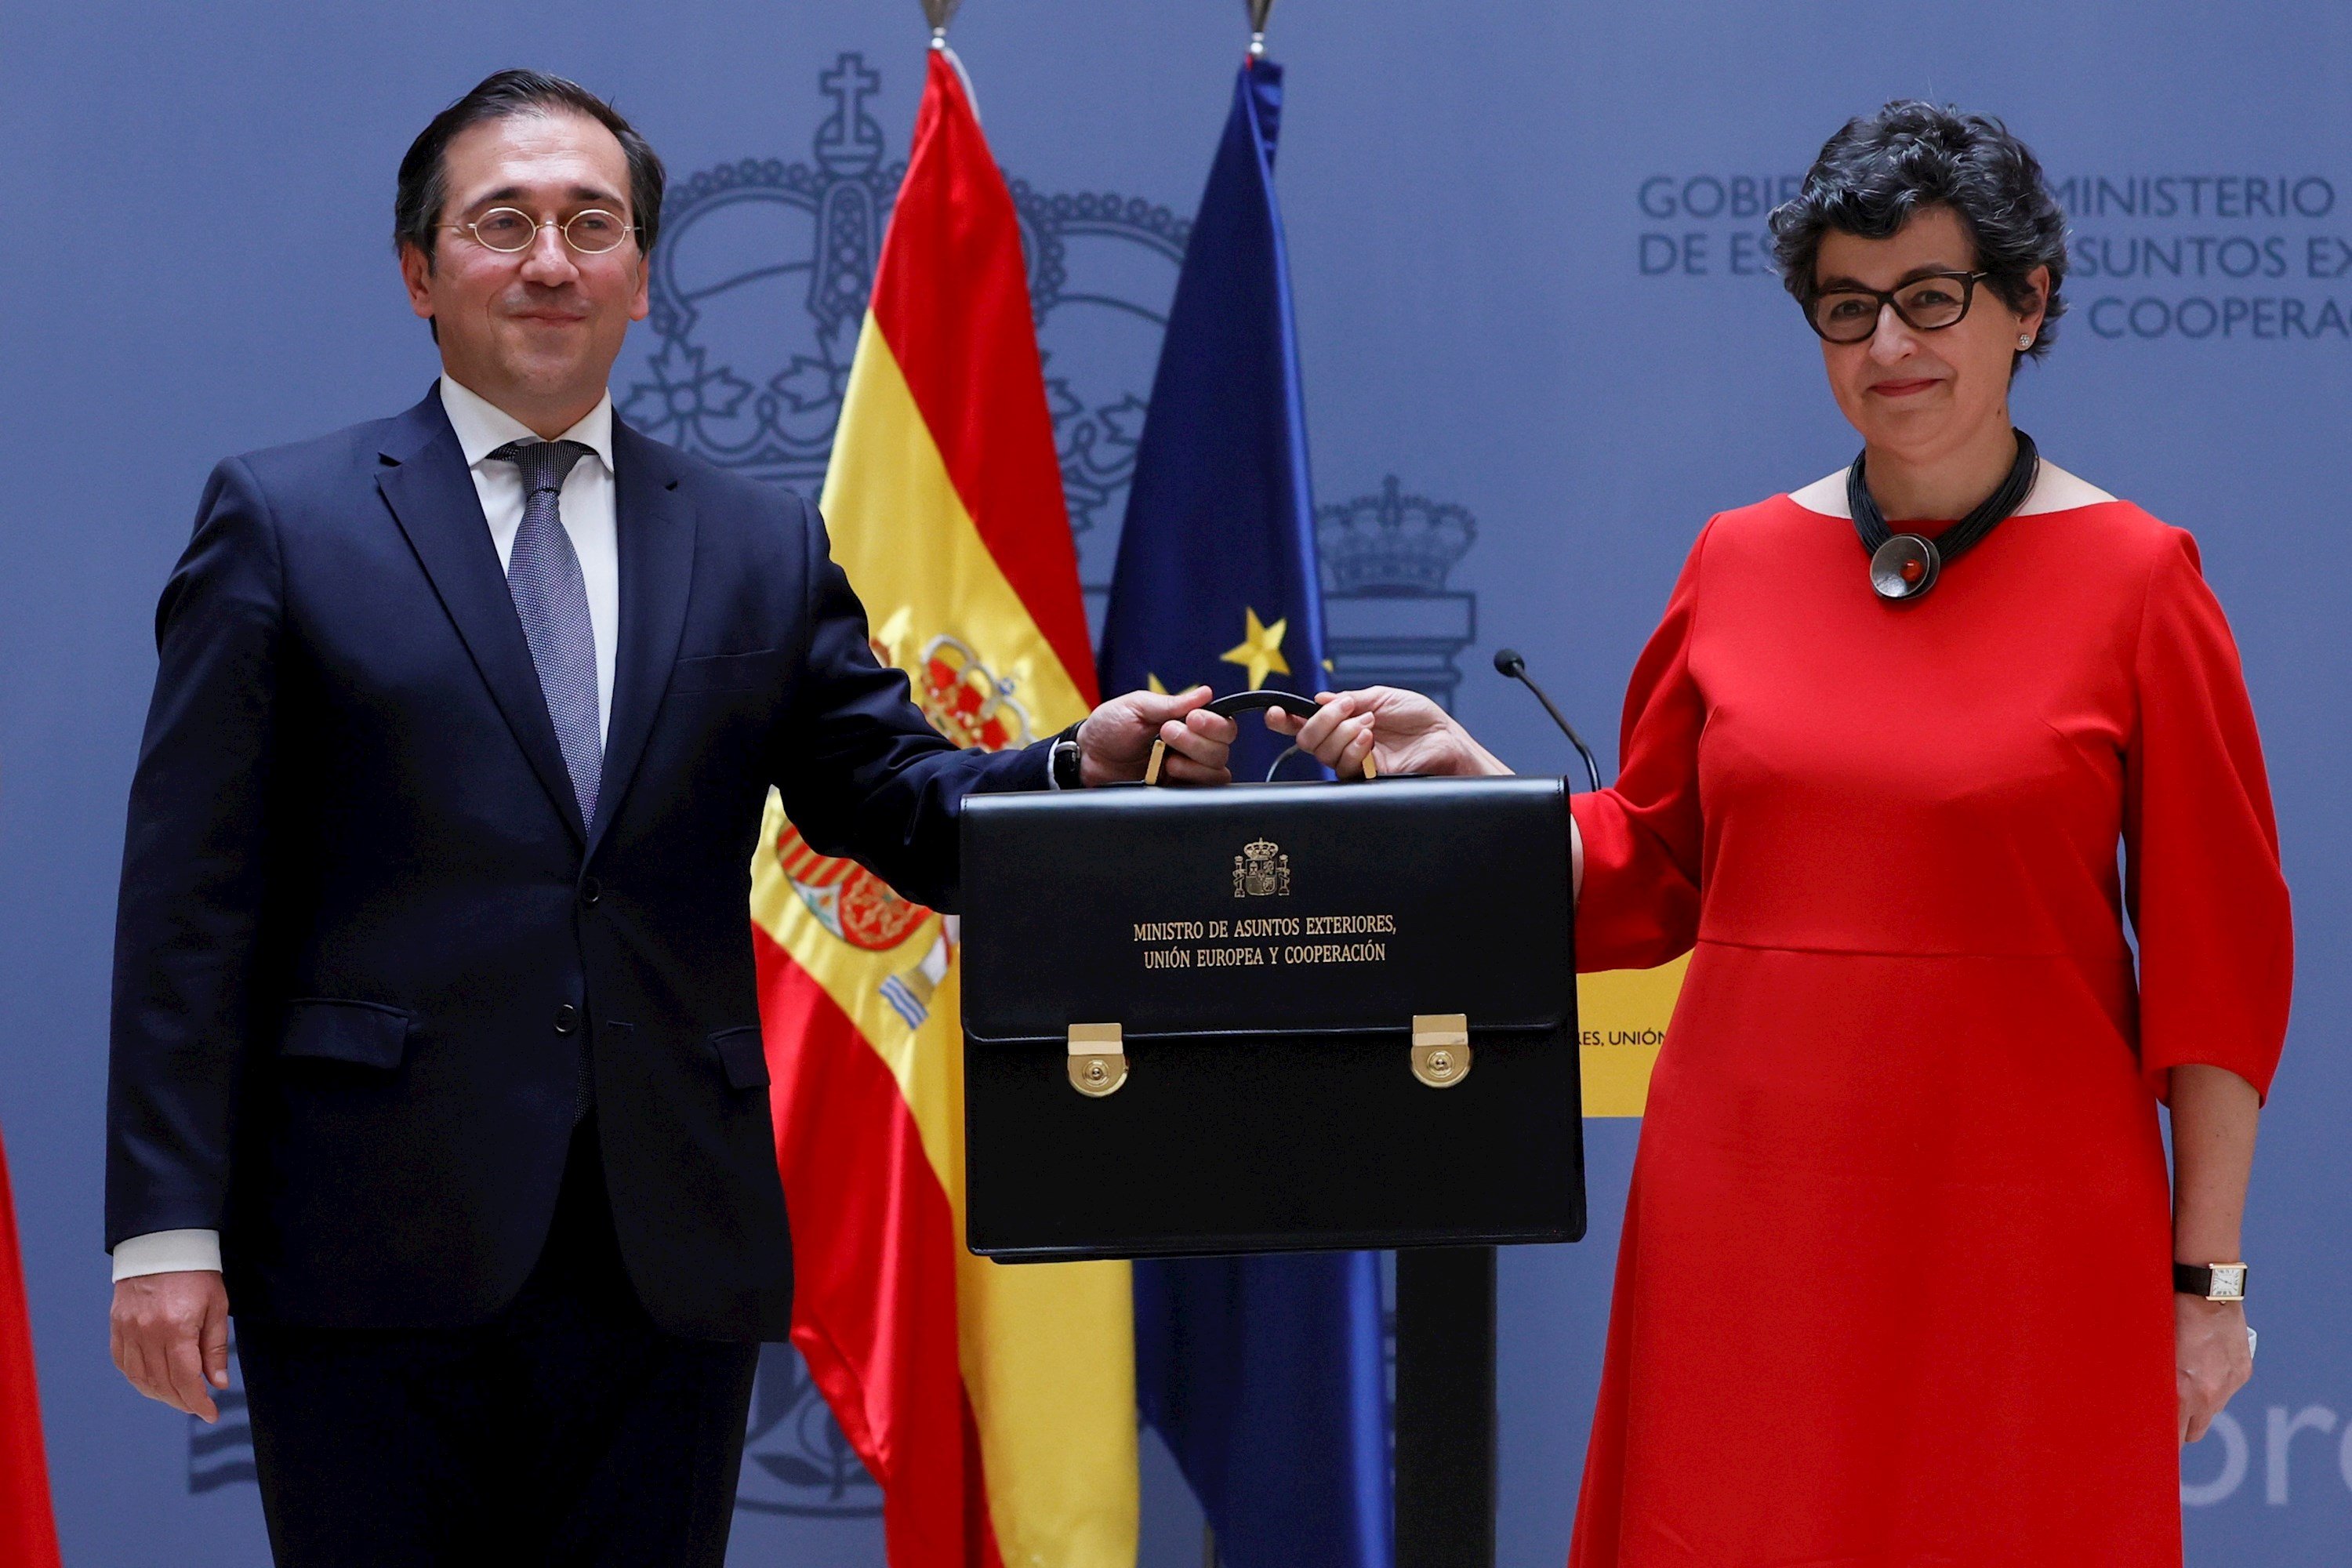 Albares quiere presentar España "como somos, un estado democrático y de derecho"